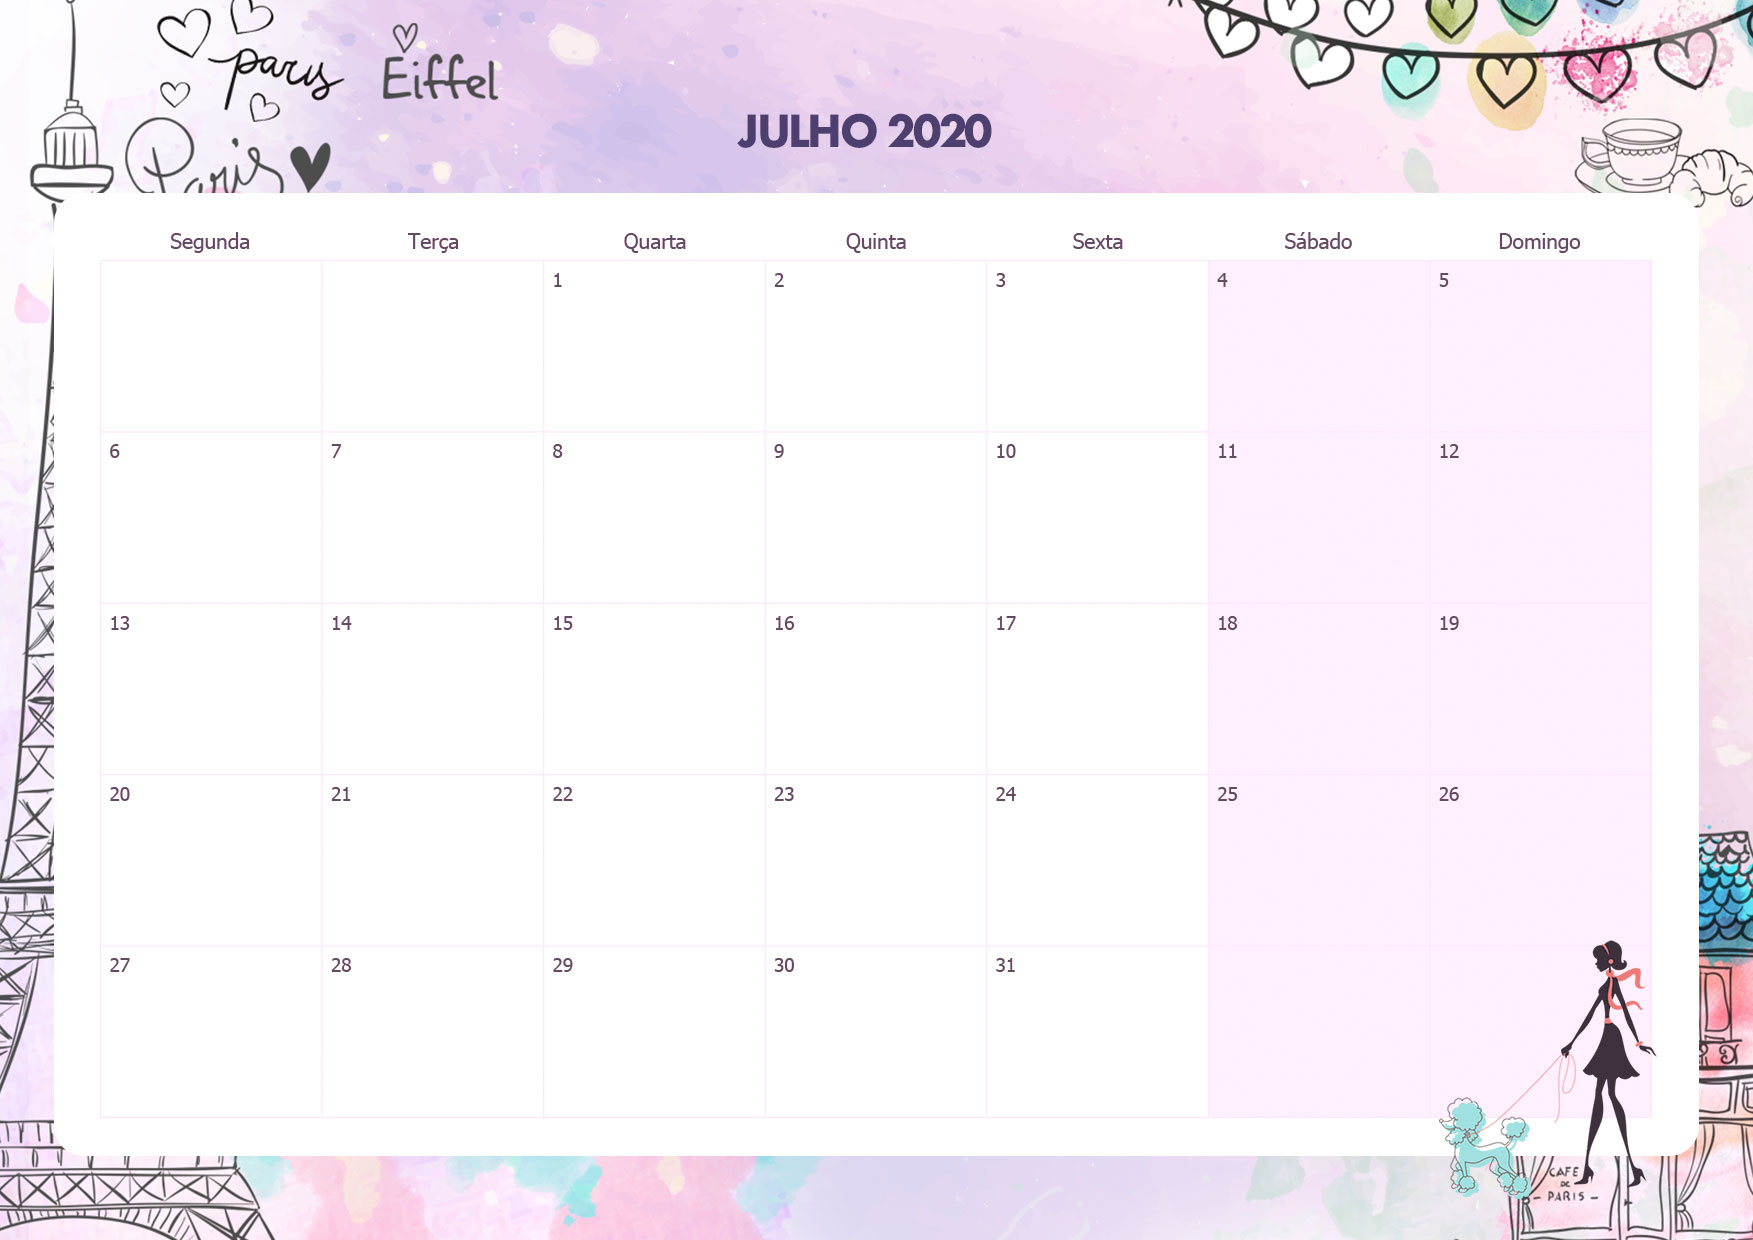 Calendario Mensal Paris Julho 2020